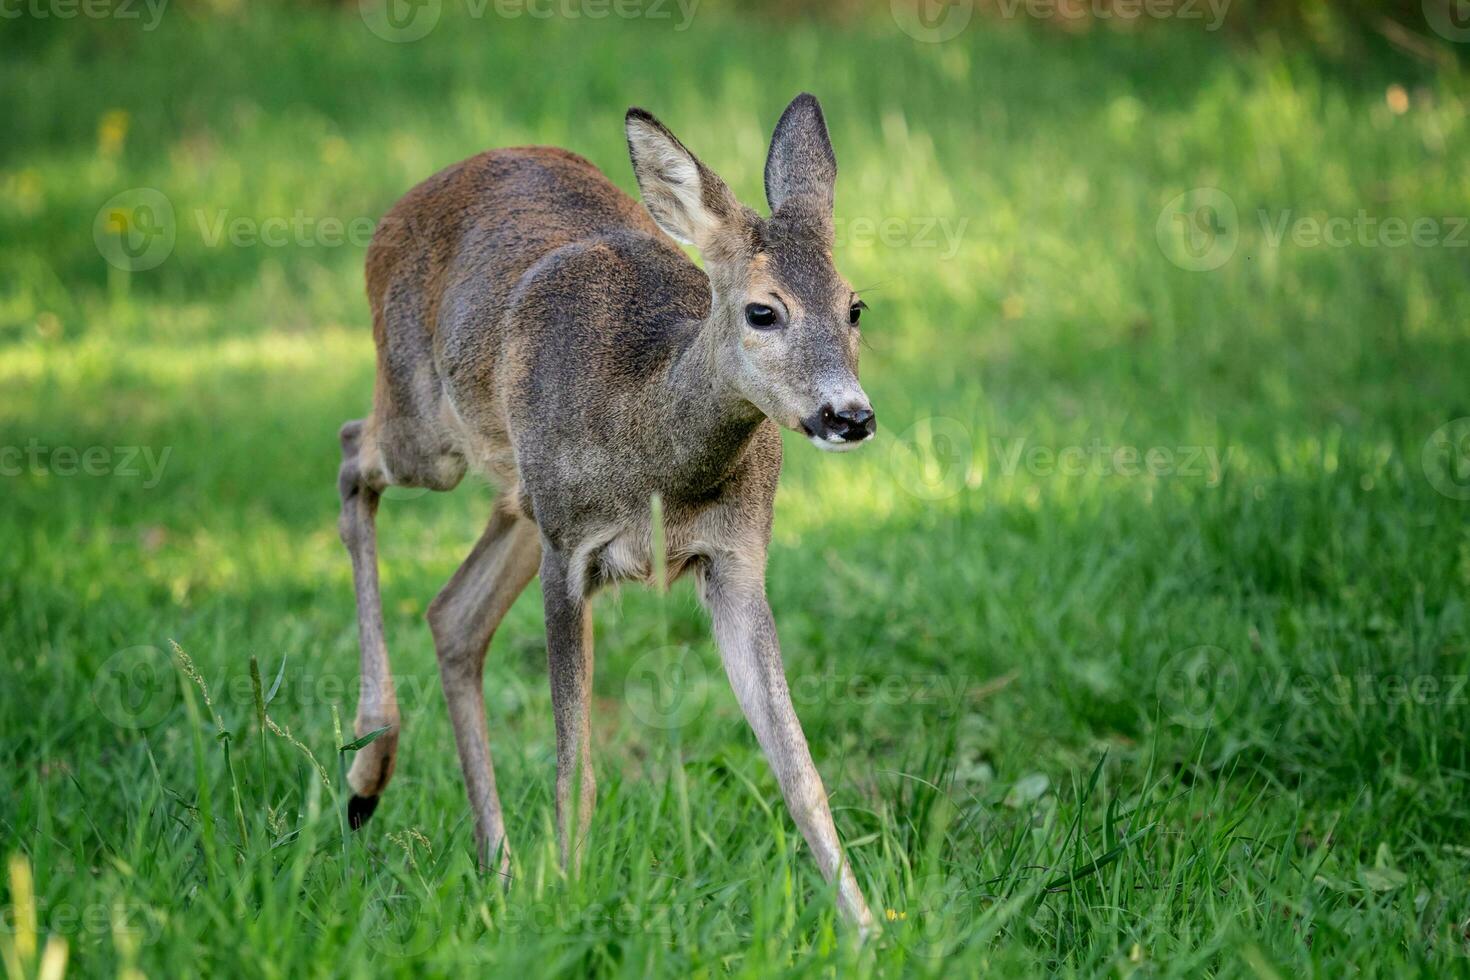 Running doe deer in grass, Capreolus capreolus. Wild roe deer in spring nature. photo